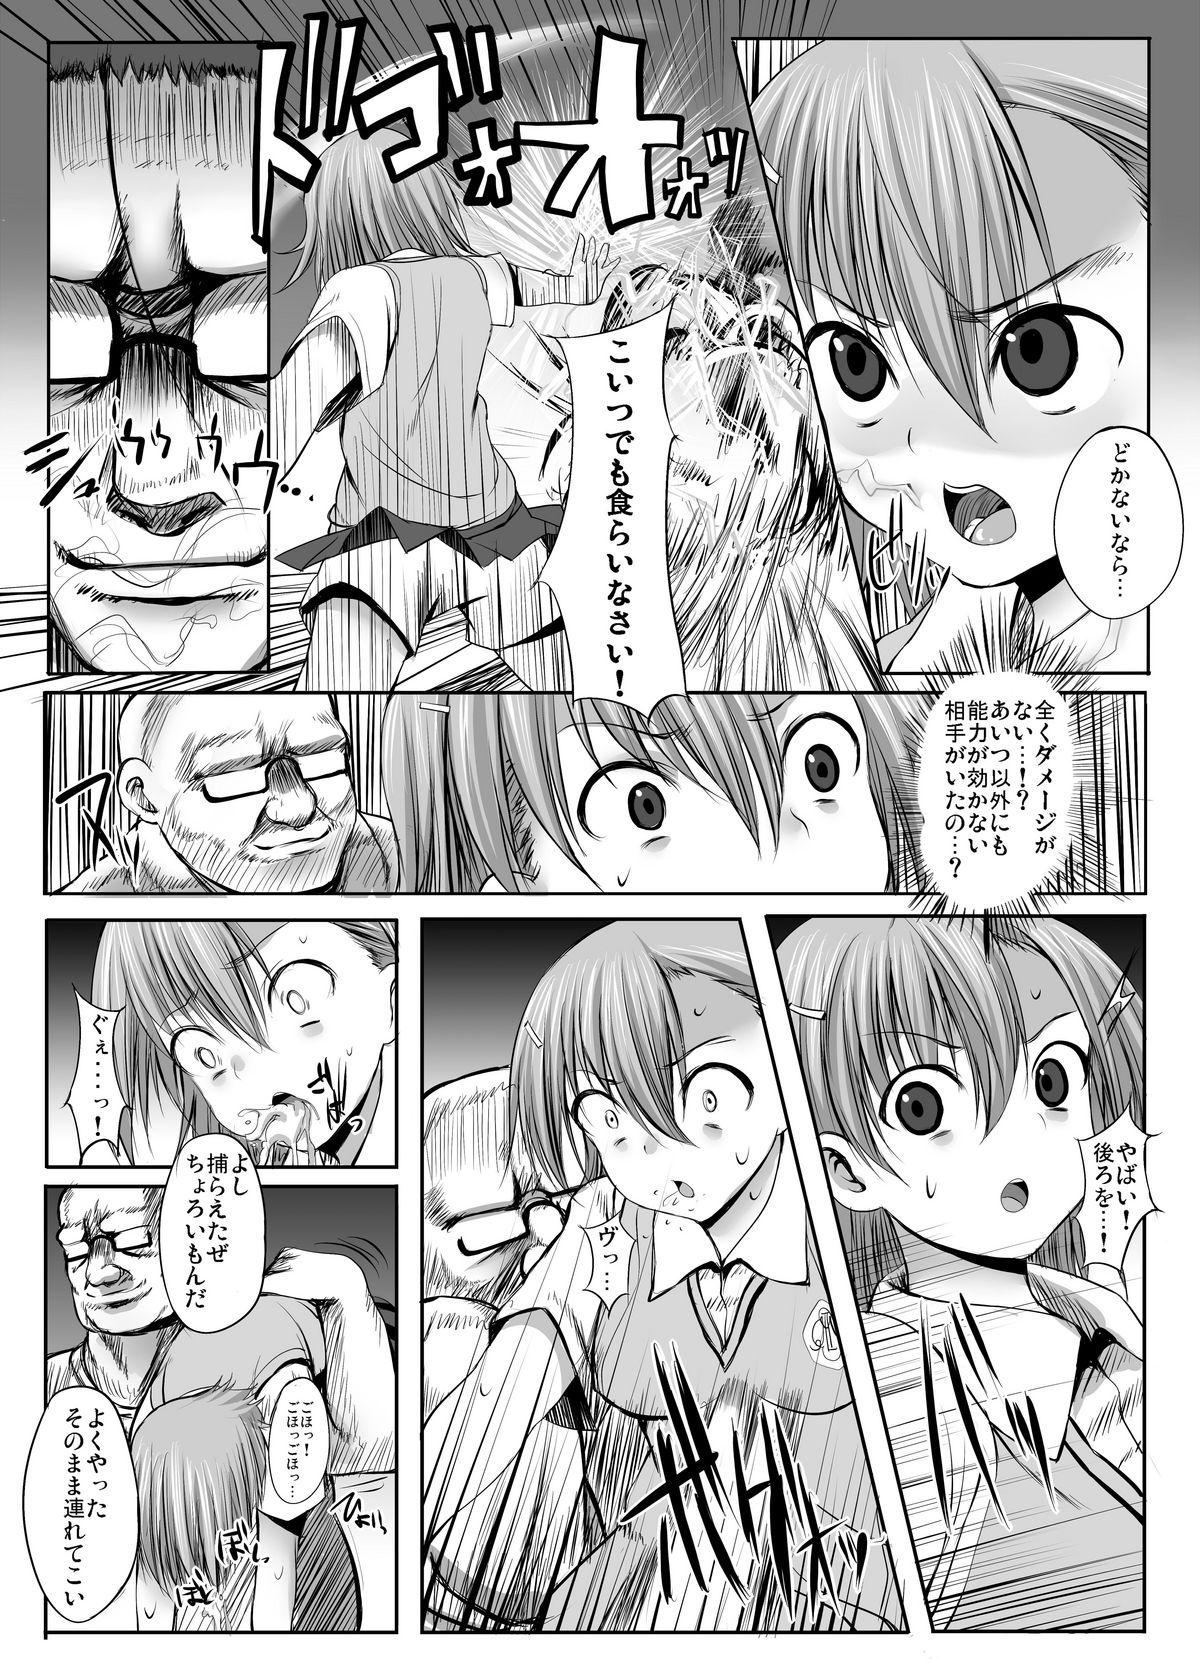 Safada ESP・BREAKER - Toaru kagaku no railgun Toaru majutsu no index Jerk - Page 3